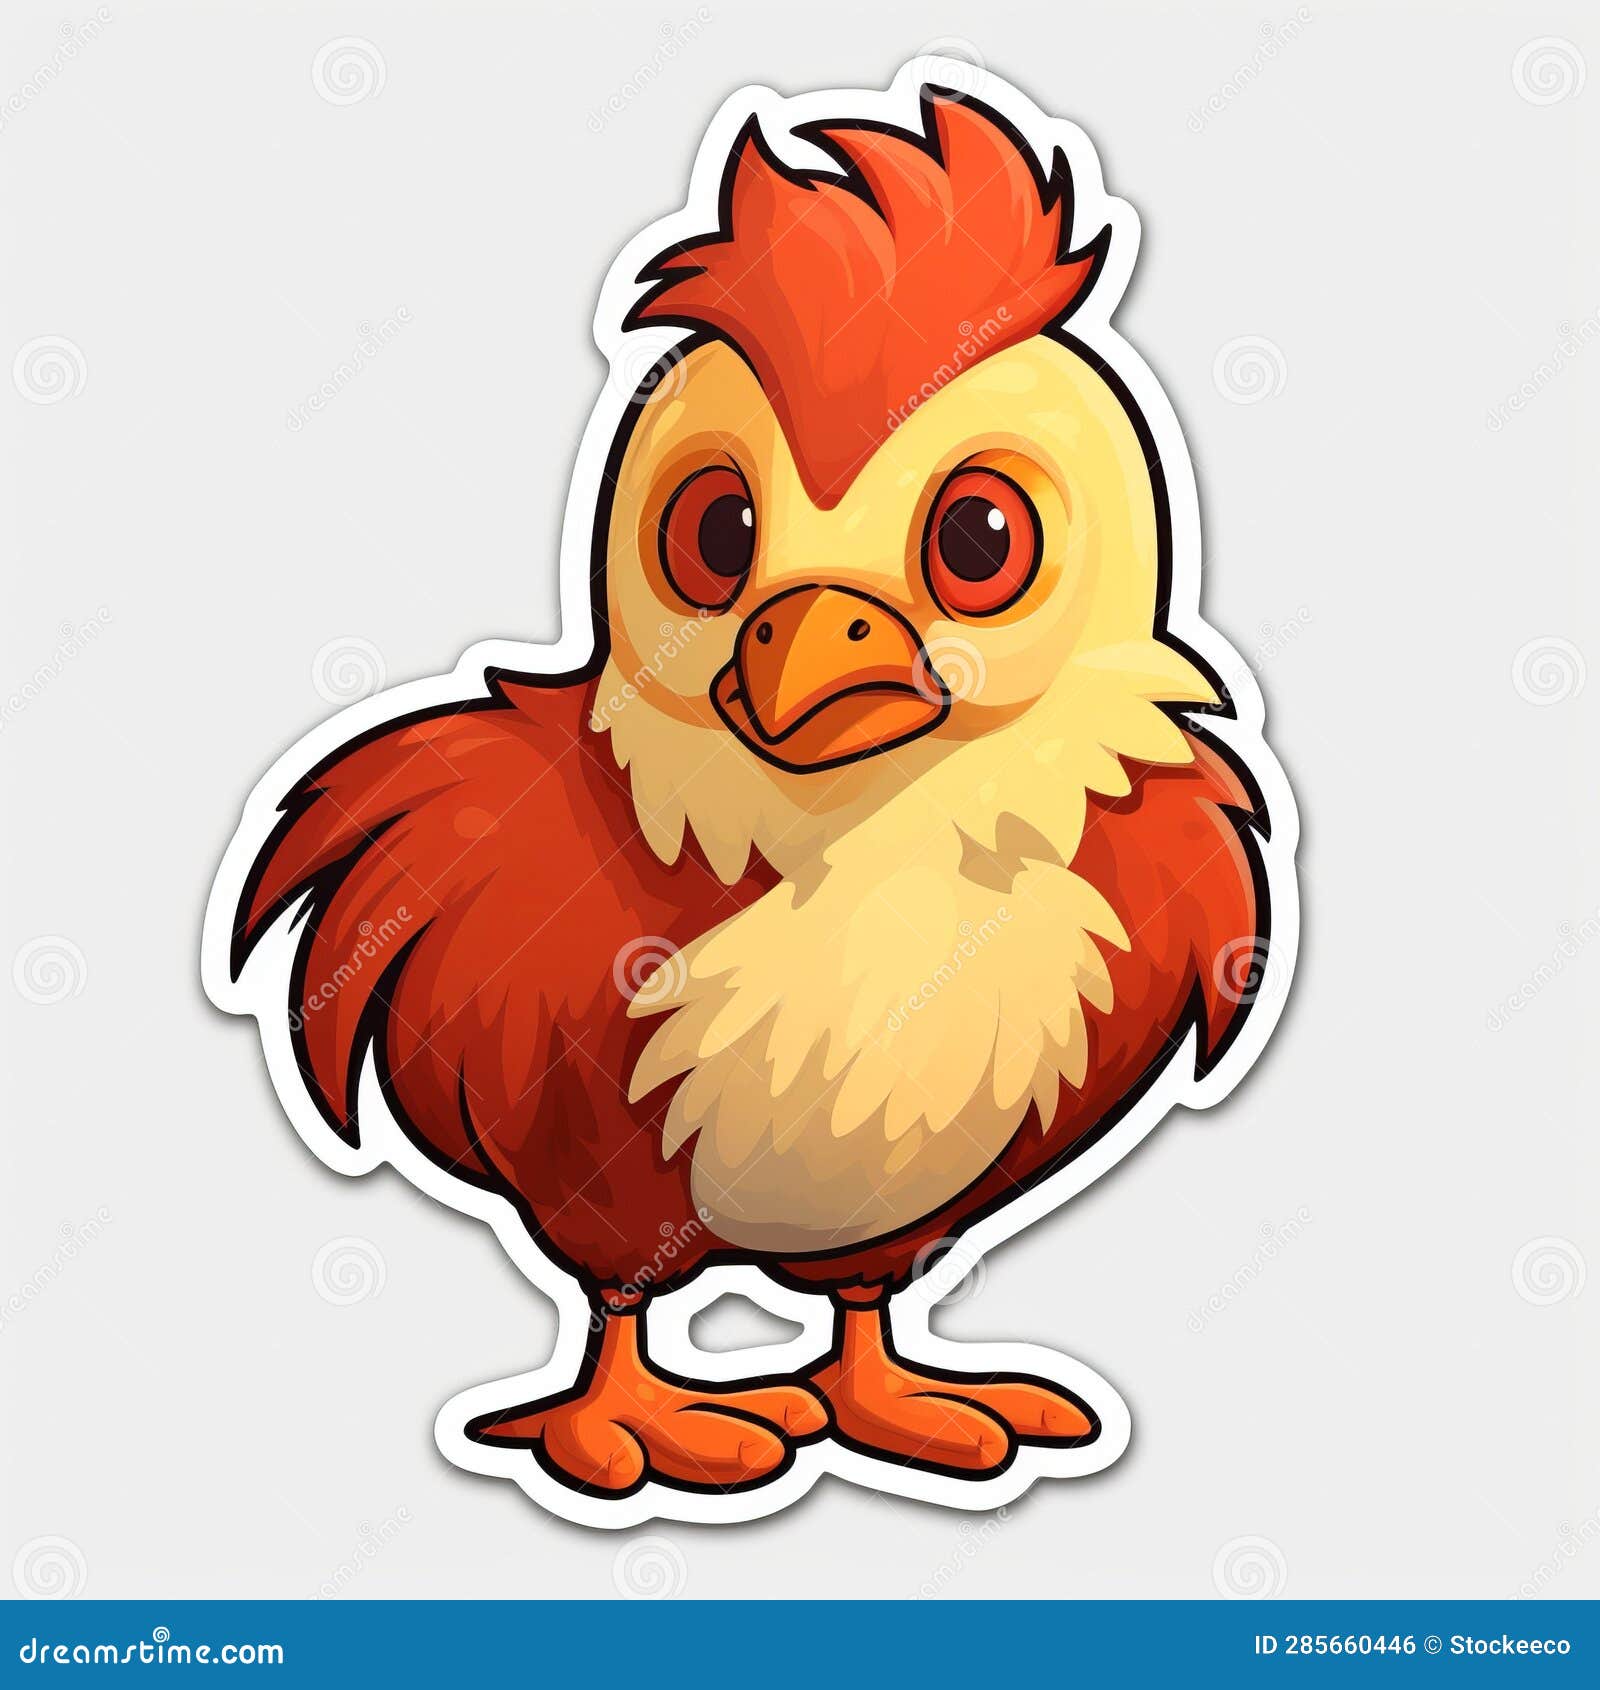 cute cartoon chicken sticker - 2d game art inspired